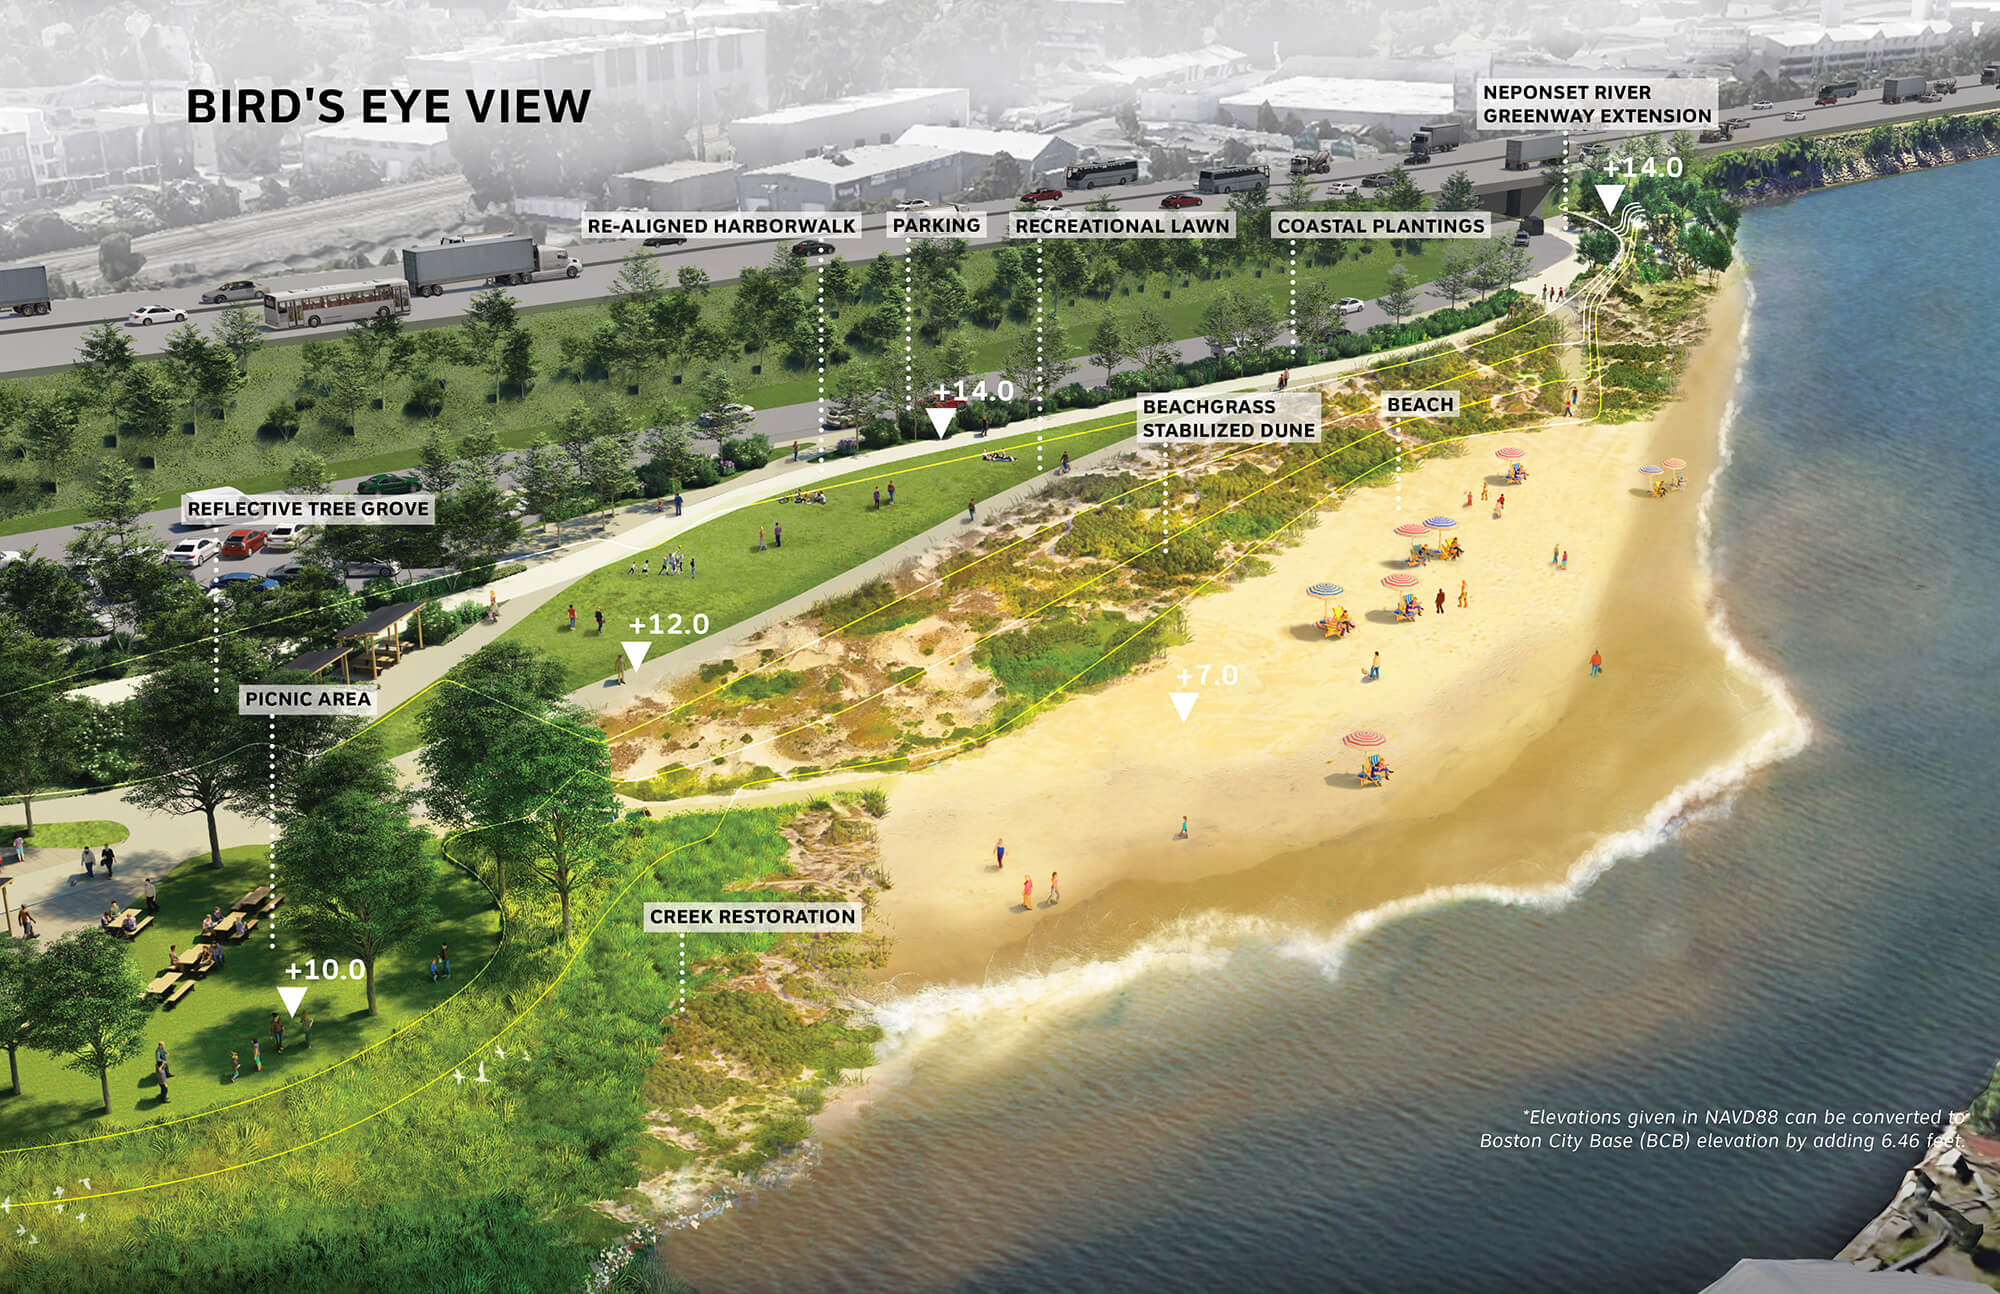 SCAPE's proposal for Tenean Beach in Boston